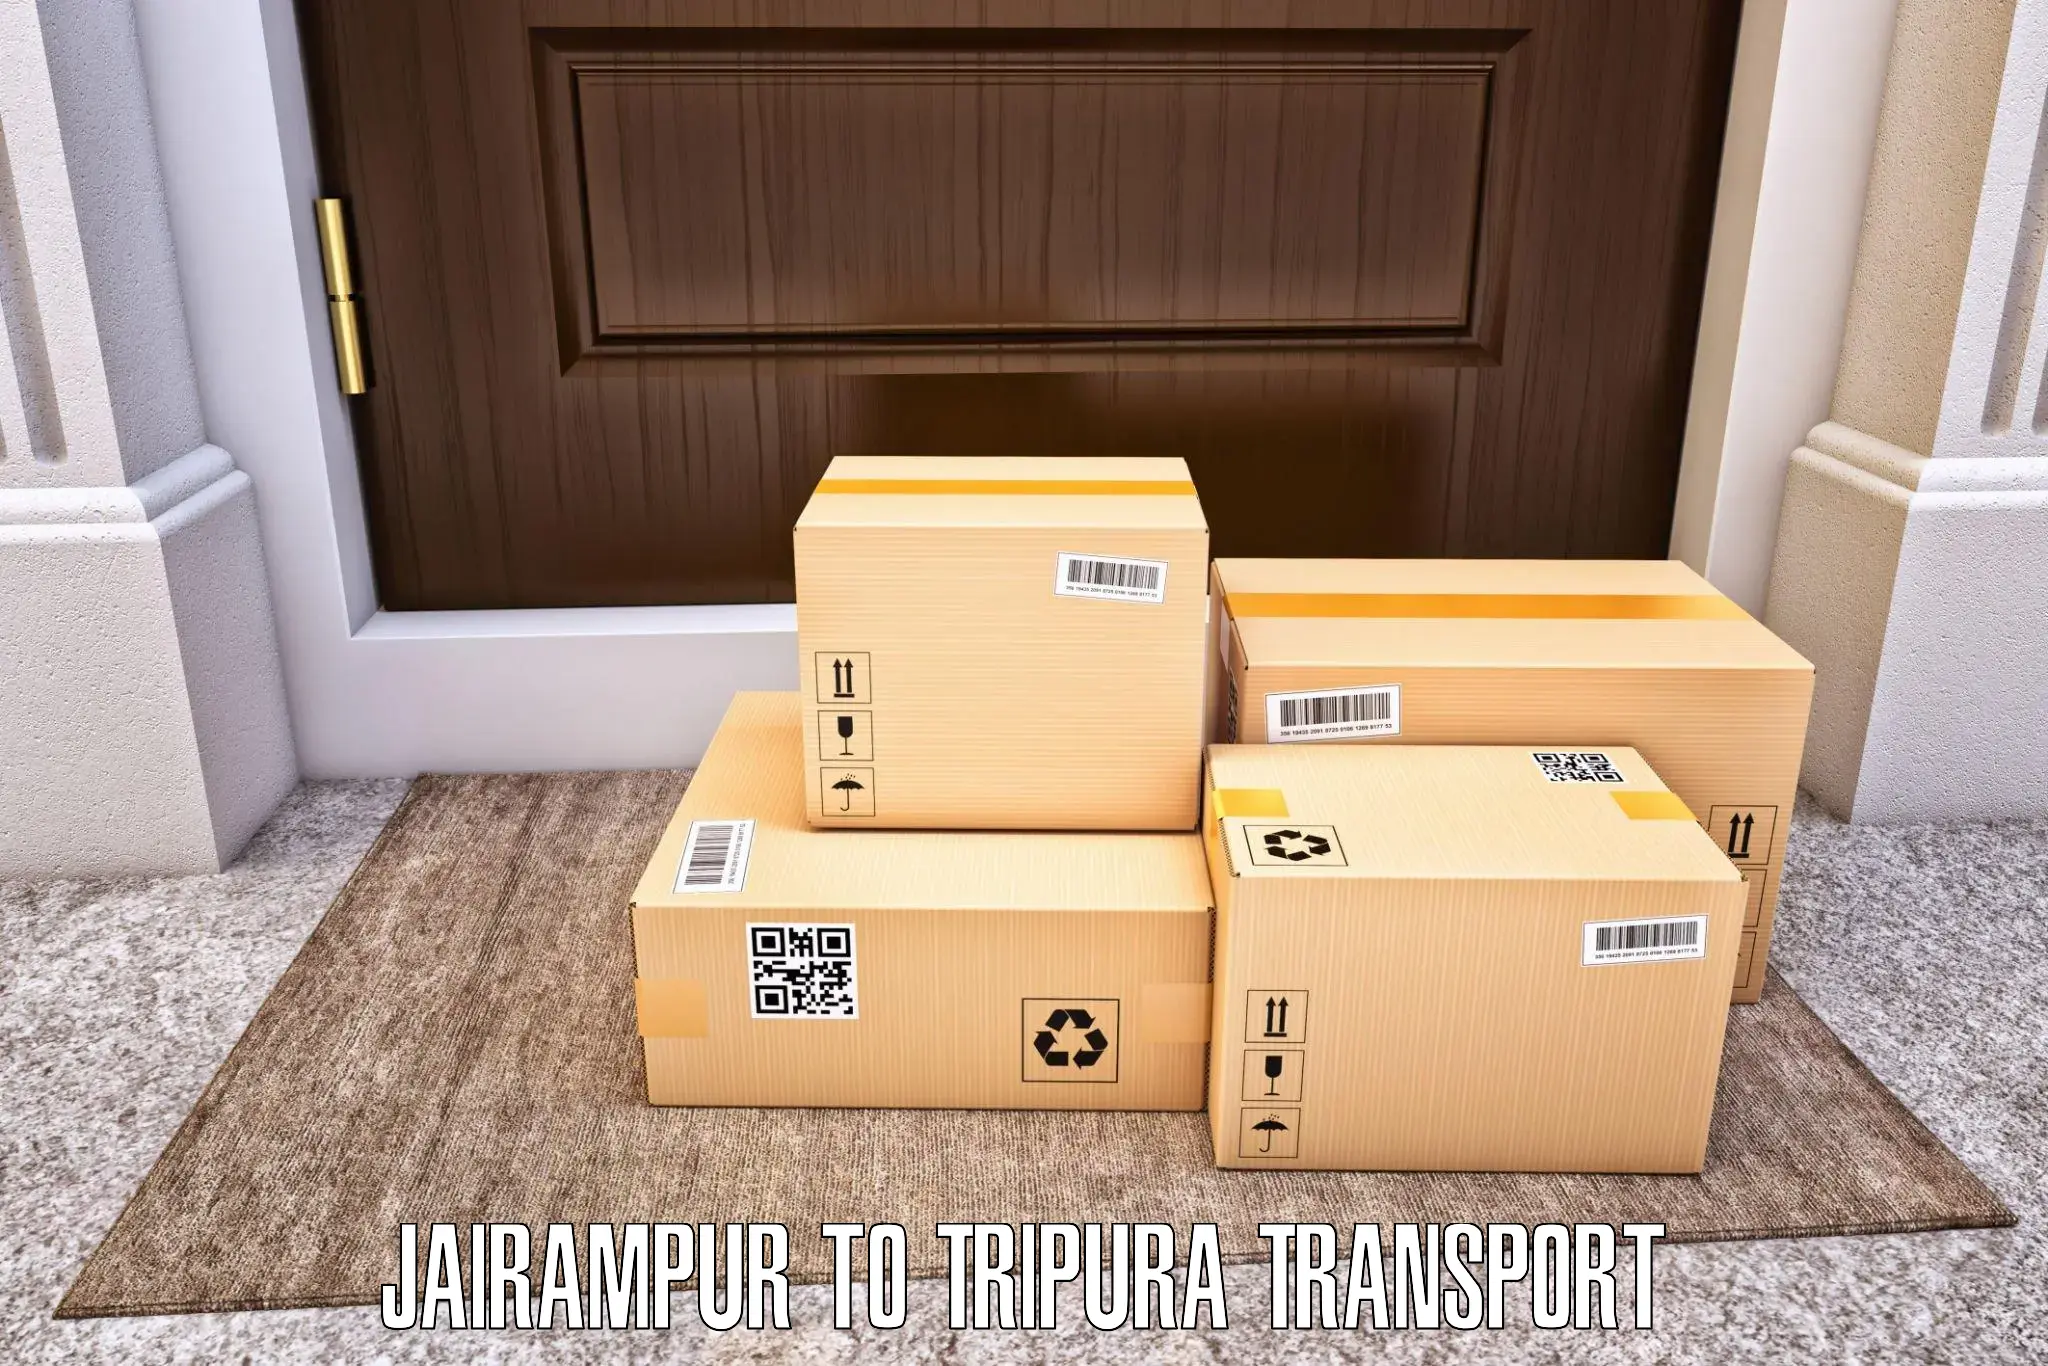 Online transport service Jairampur to Dharmanagar